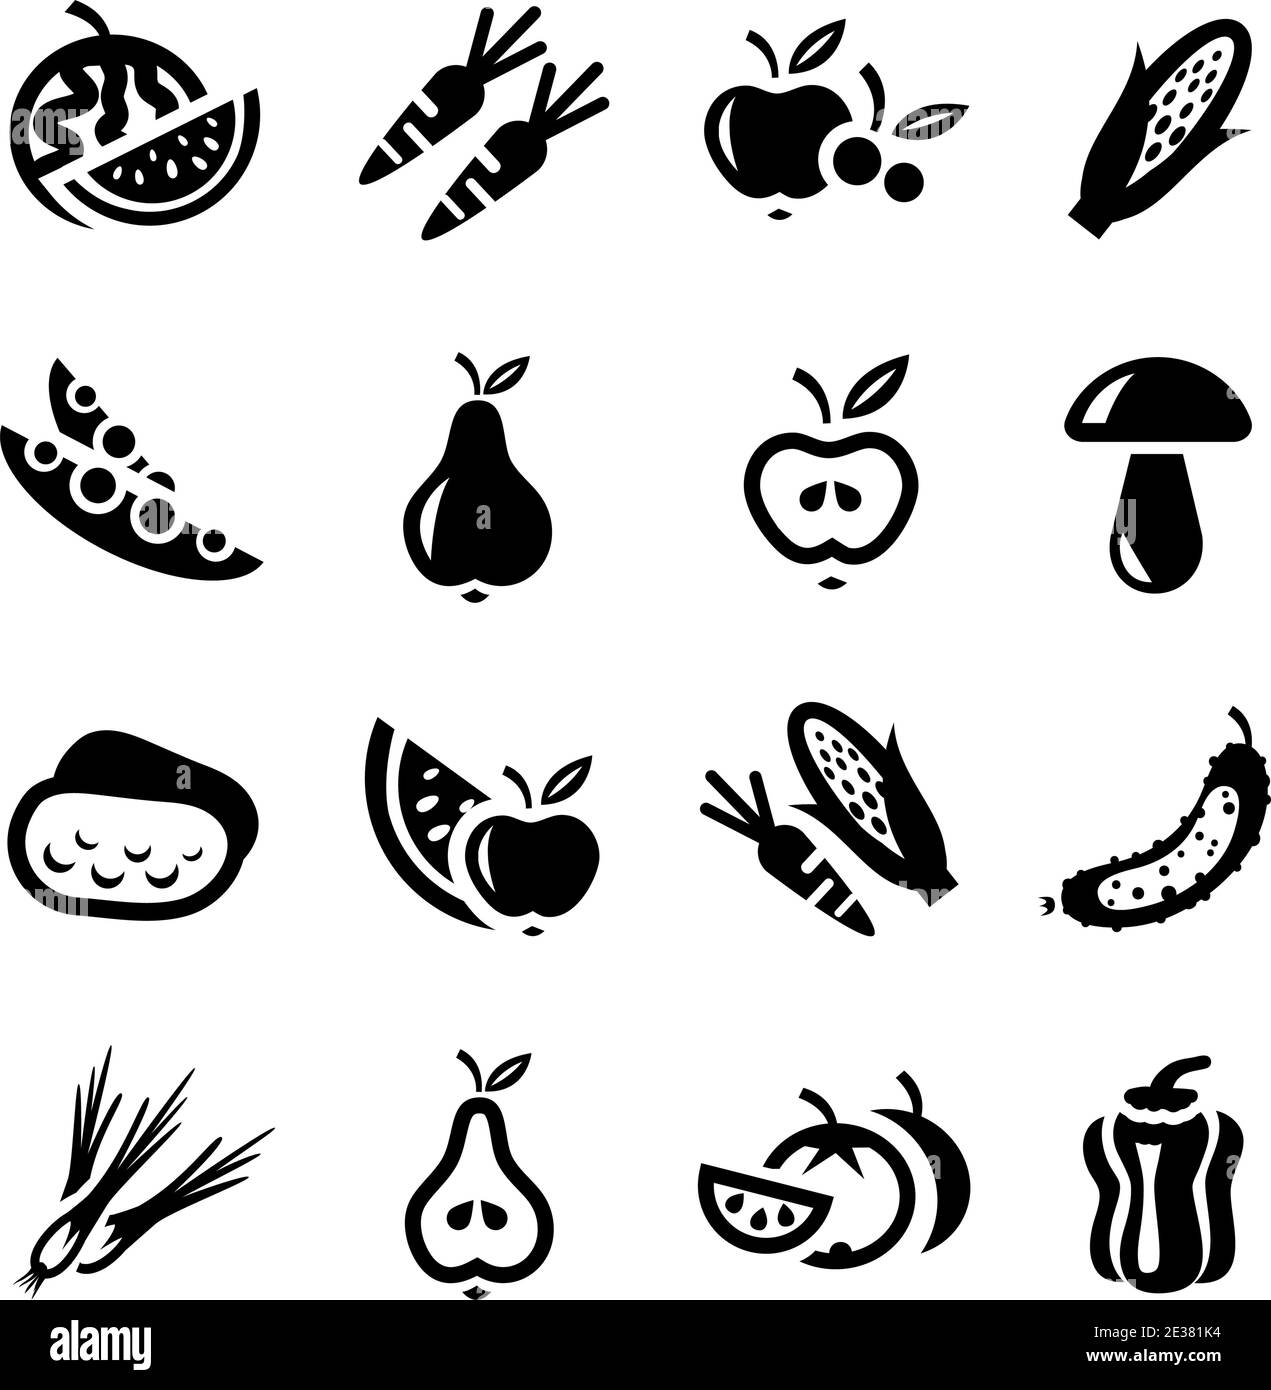 Obst und Gemüse Vector Icon Set für Web und Mobile. Alle Elemente sind gruppiert. Stock Vektor